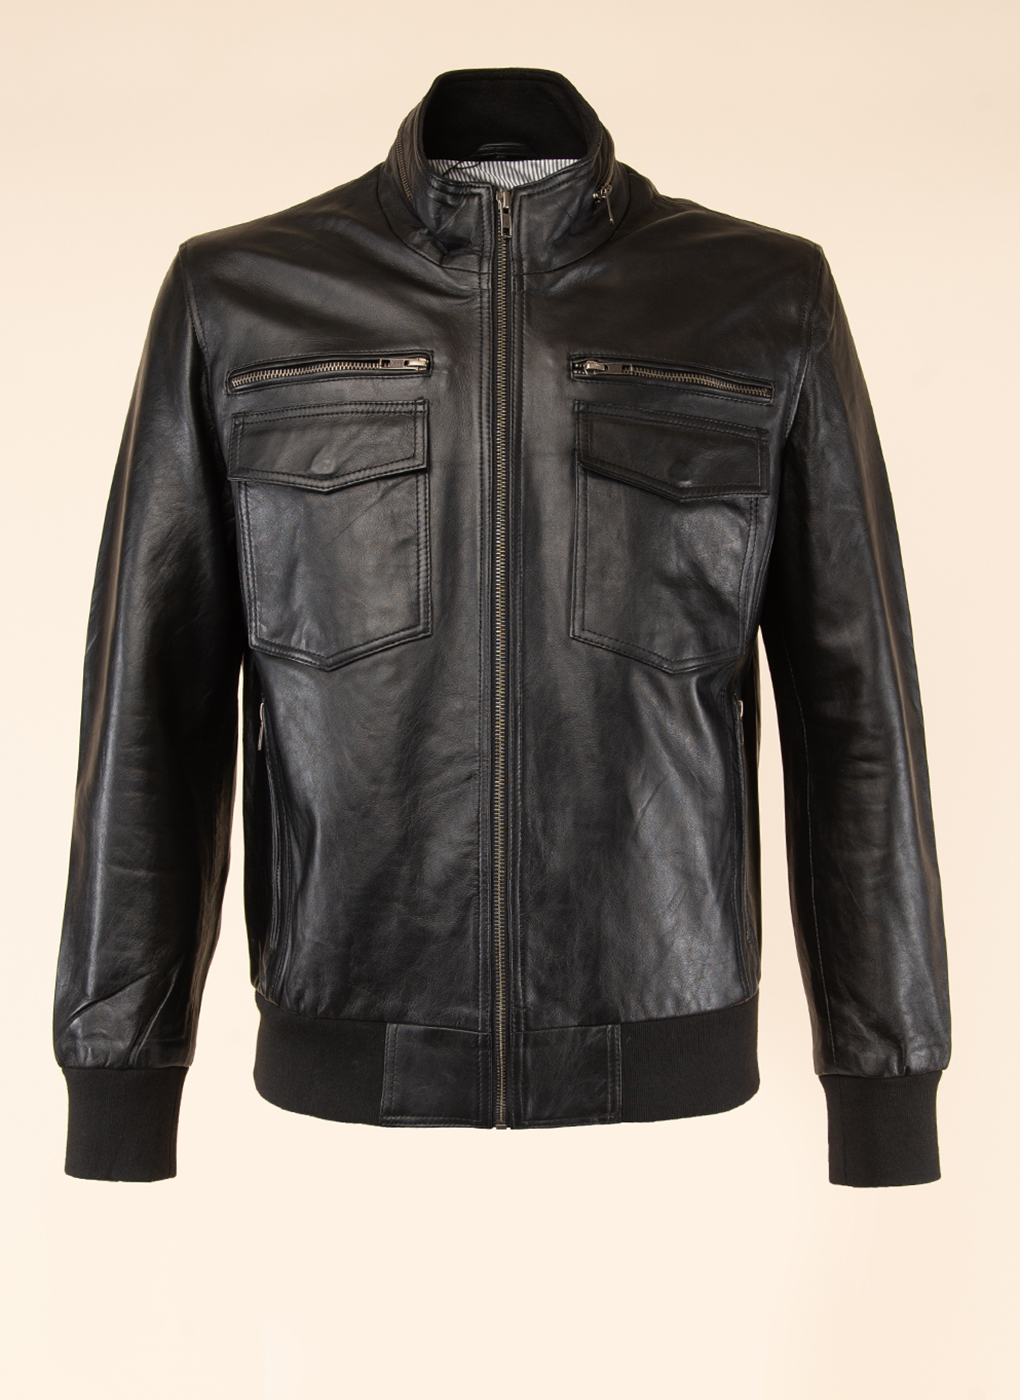 Кожаная куртка мужская Каляев 1581011 черная 54 RU